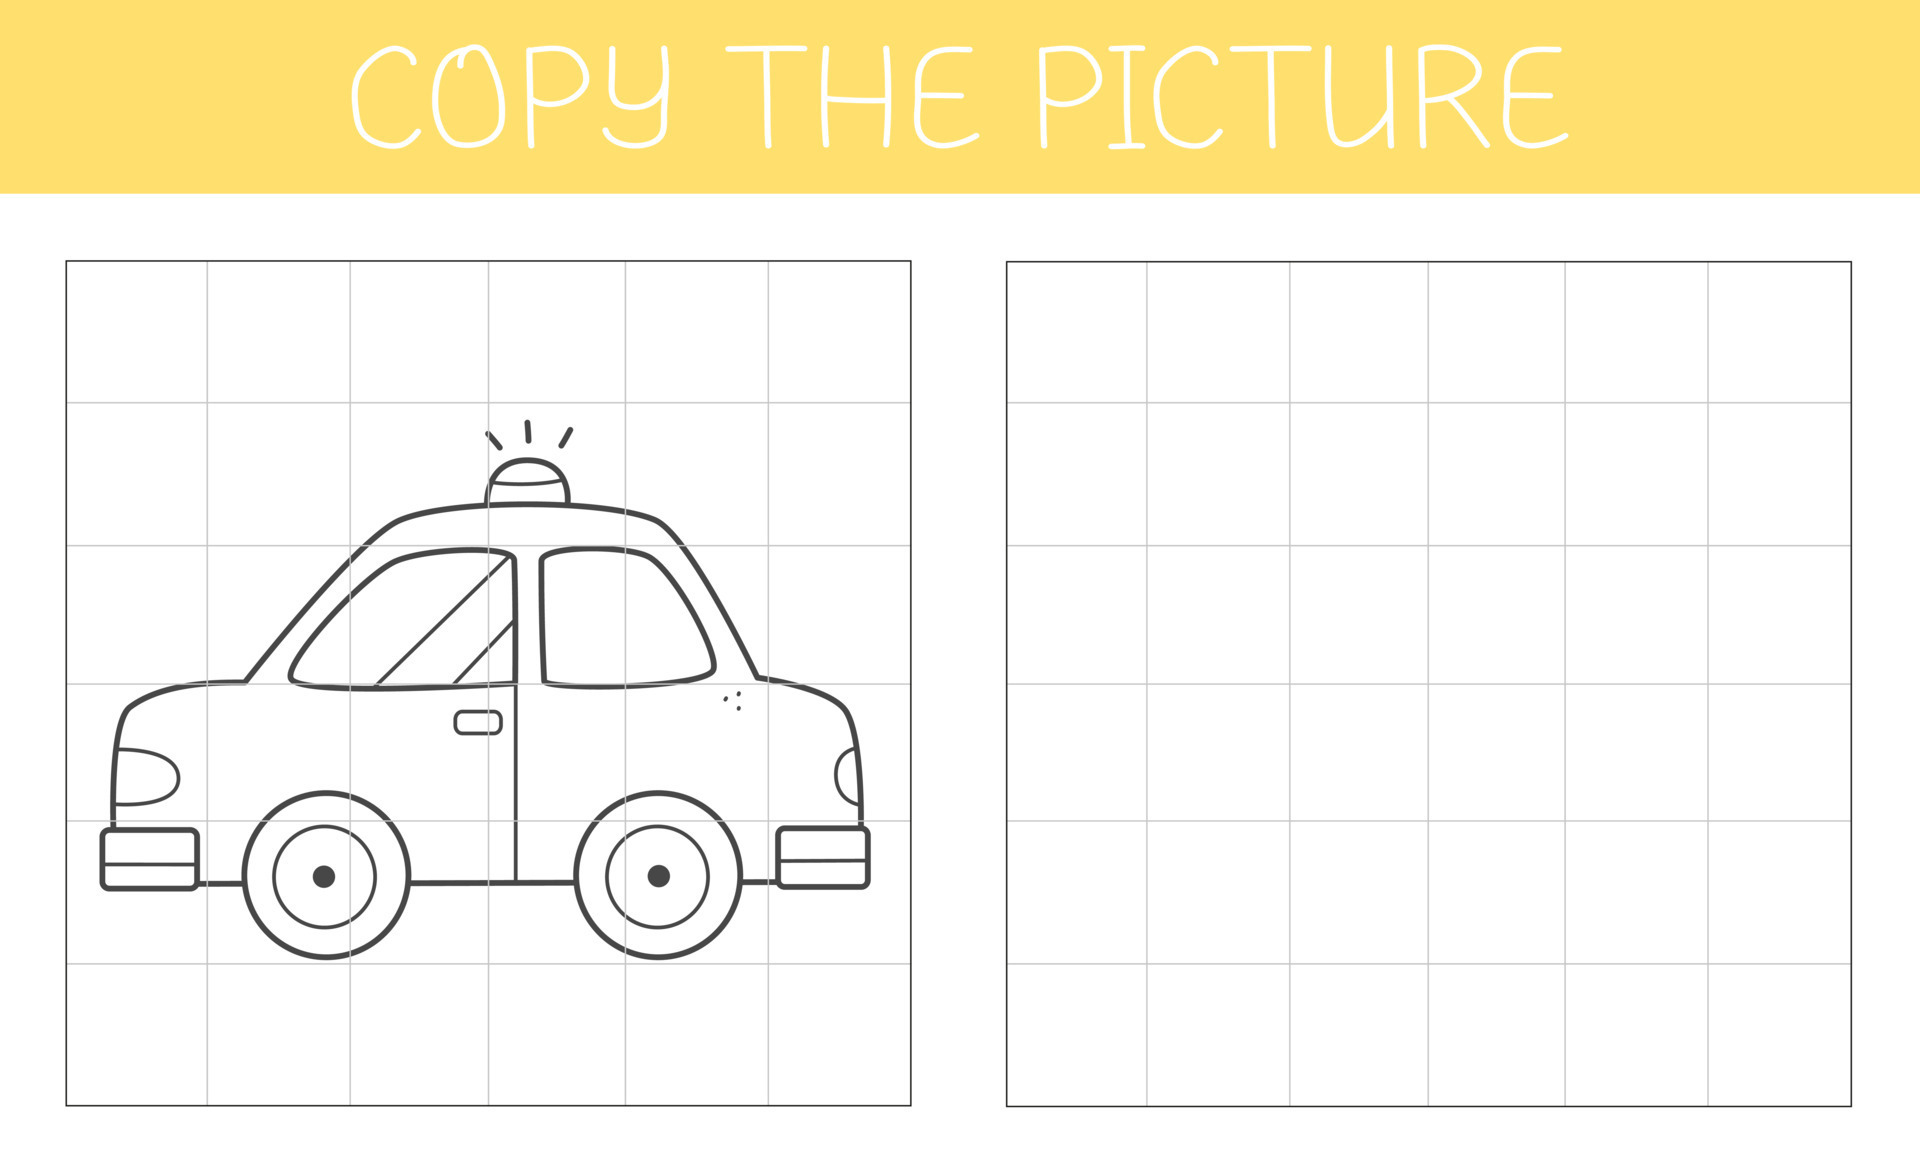 copiar a imagem é um jogo educativo para crianças com carro. livro